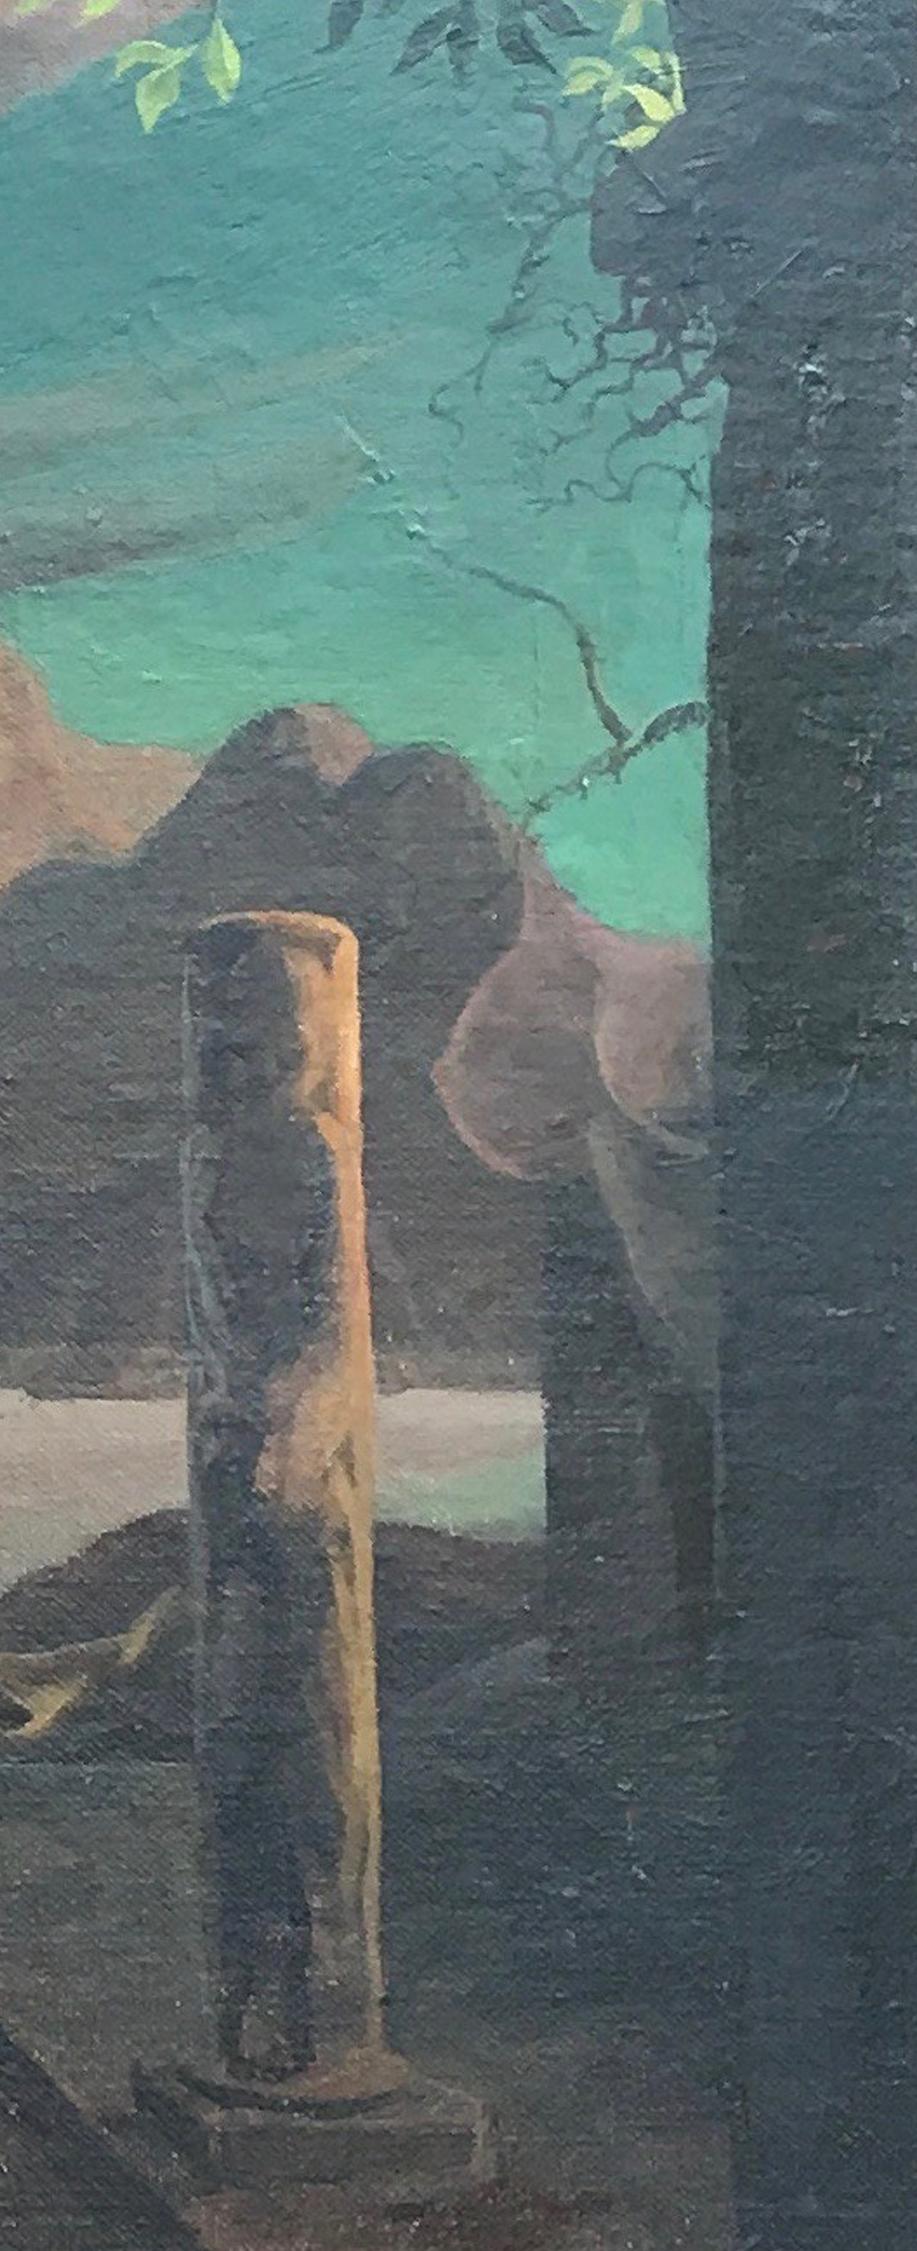 Figures dans un paysage surréaliste avec visages cachés, femme nue, architecture 1951 - Surréalisme Painting par Salvador De Regil